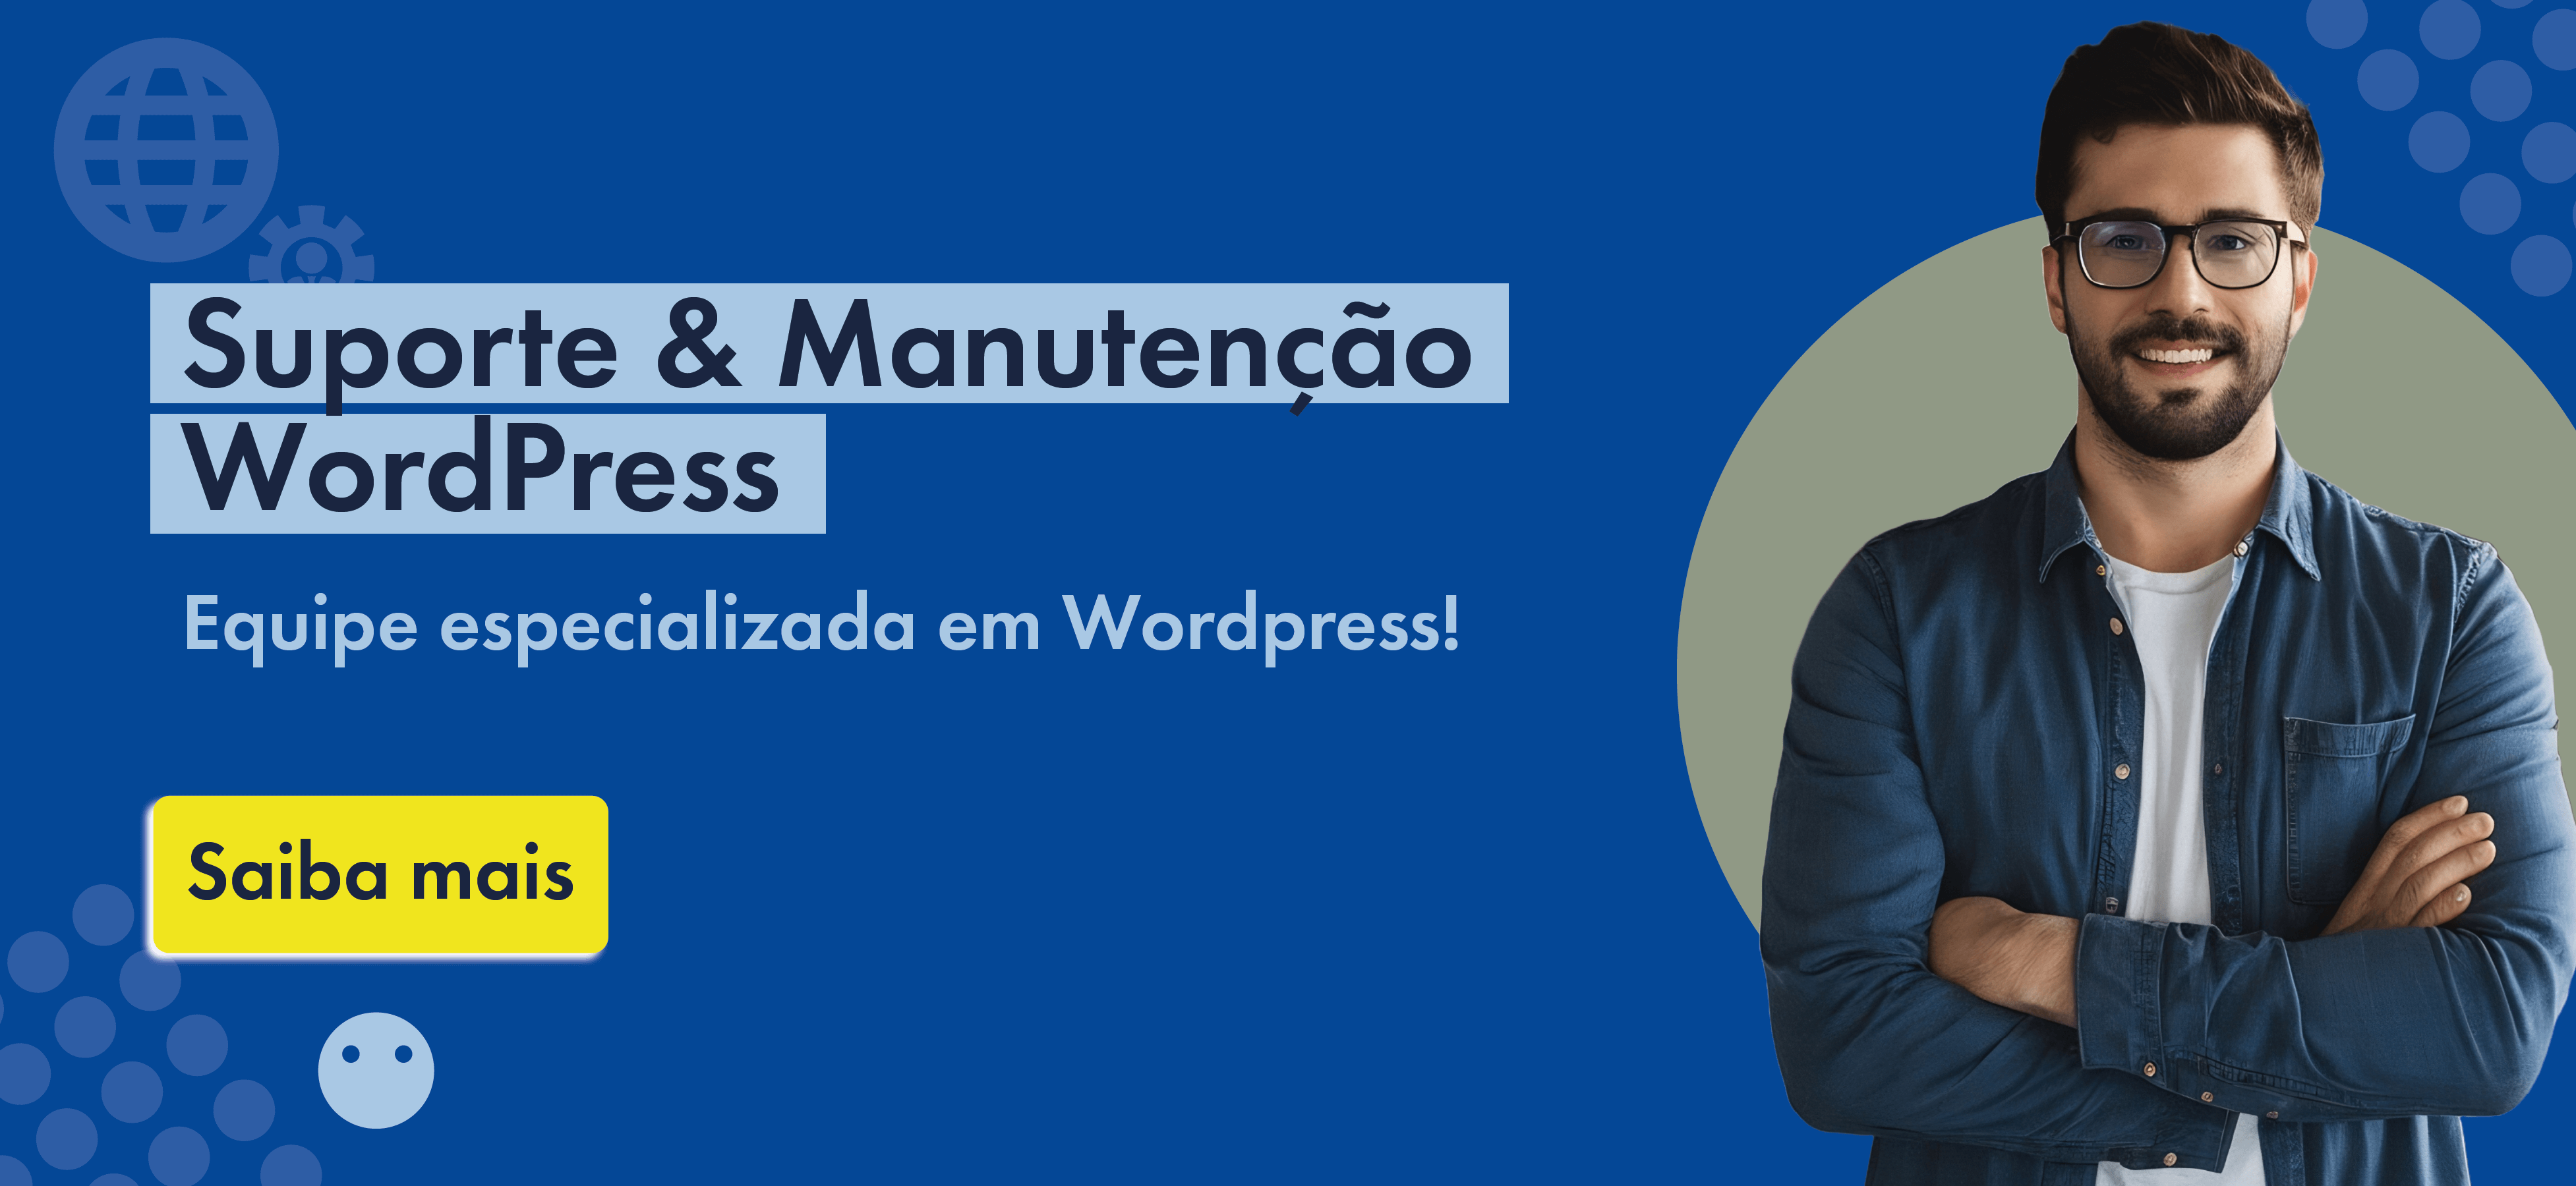 Suporte & Manutenção WordPress